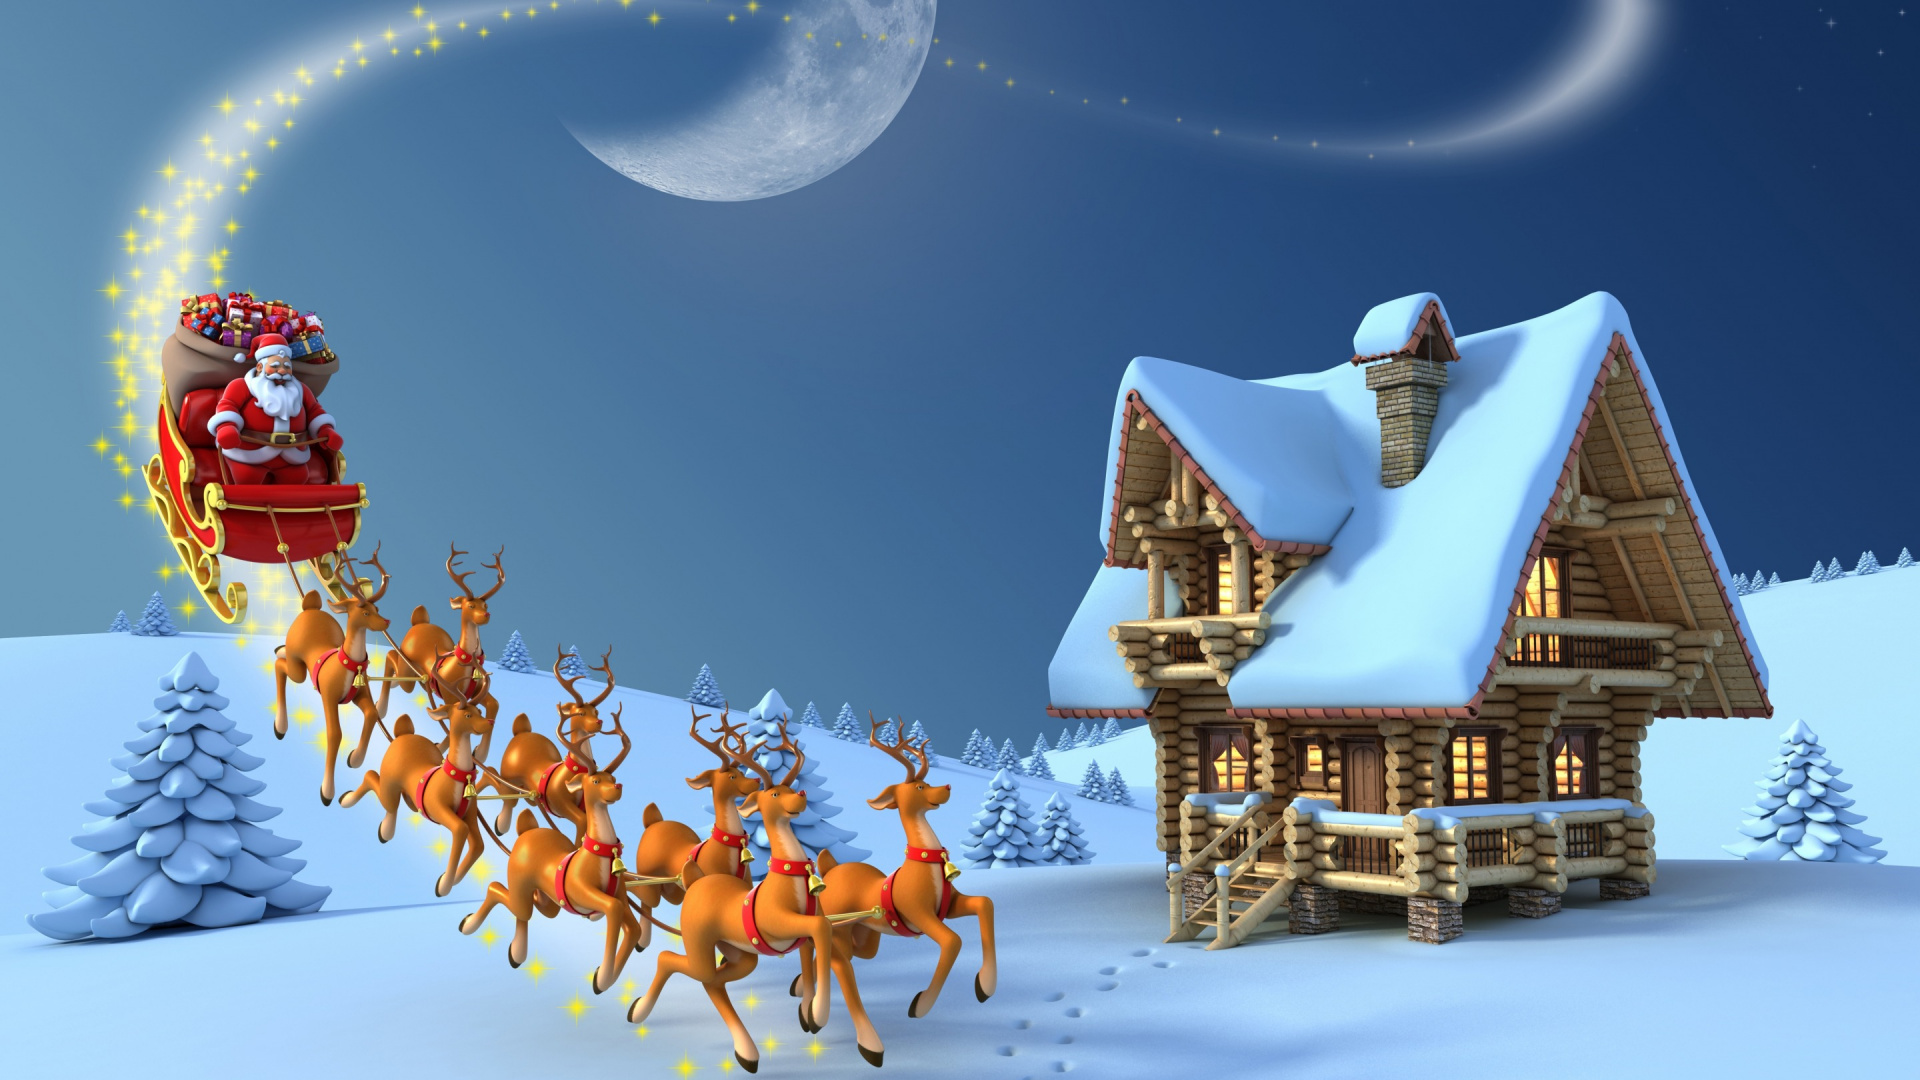 驯鹿, 圣诞老人, 圣诞节那天, 雪橇, 冬天 壁纸 1920x1080 允许